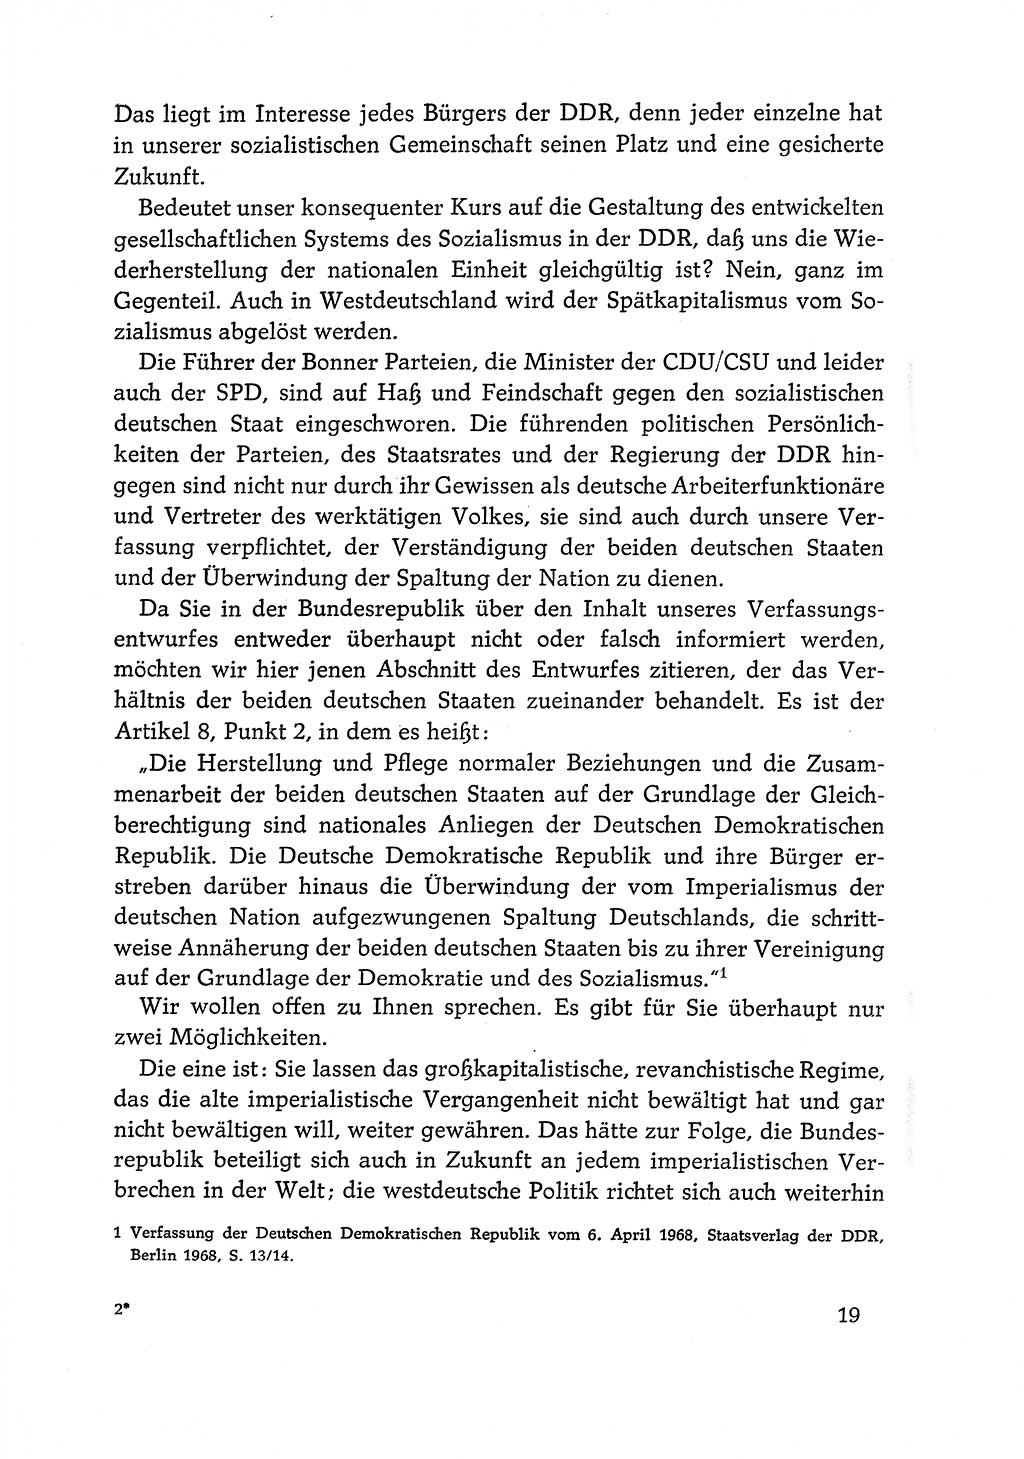 Dokumente der Sozialistischen Einheitspartei Deutschlands (SED) [Deutsche Demokratische Republik (DDR)] 1968-1969, Seite 19 (Dok. SED DDR 1968-1969, S. 19)